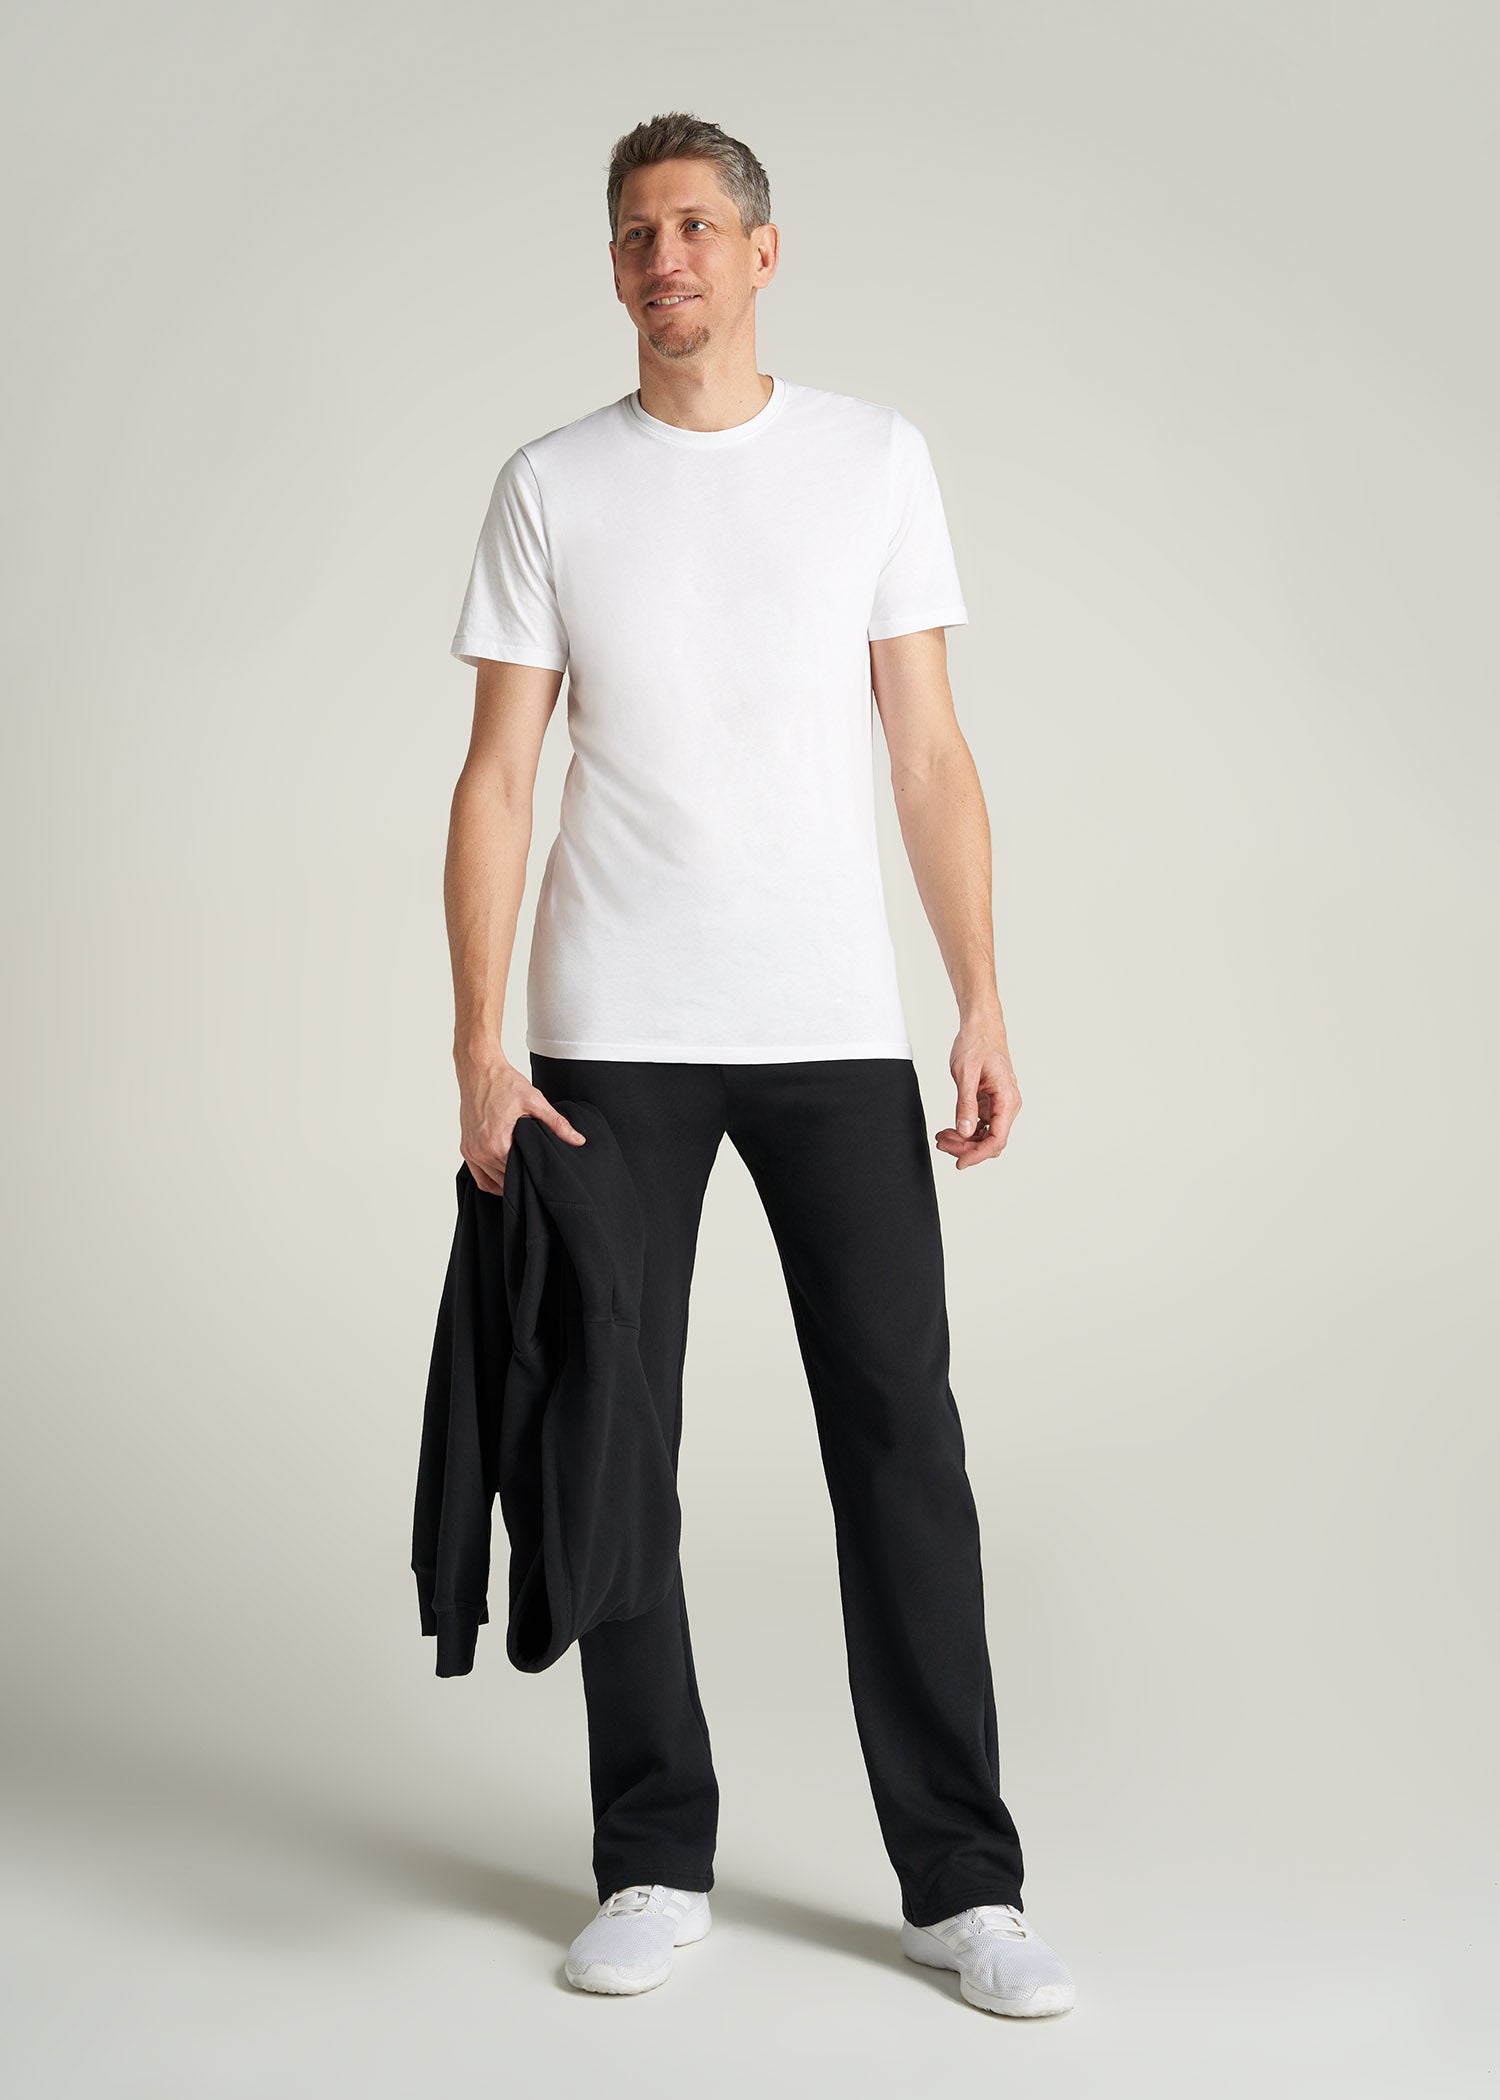 Wearever Fleece Open-Bottom Sweatpants for Tall Women in Black